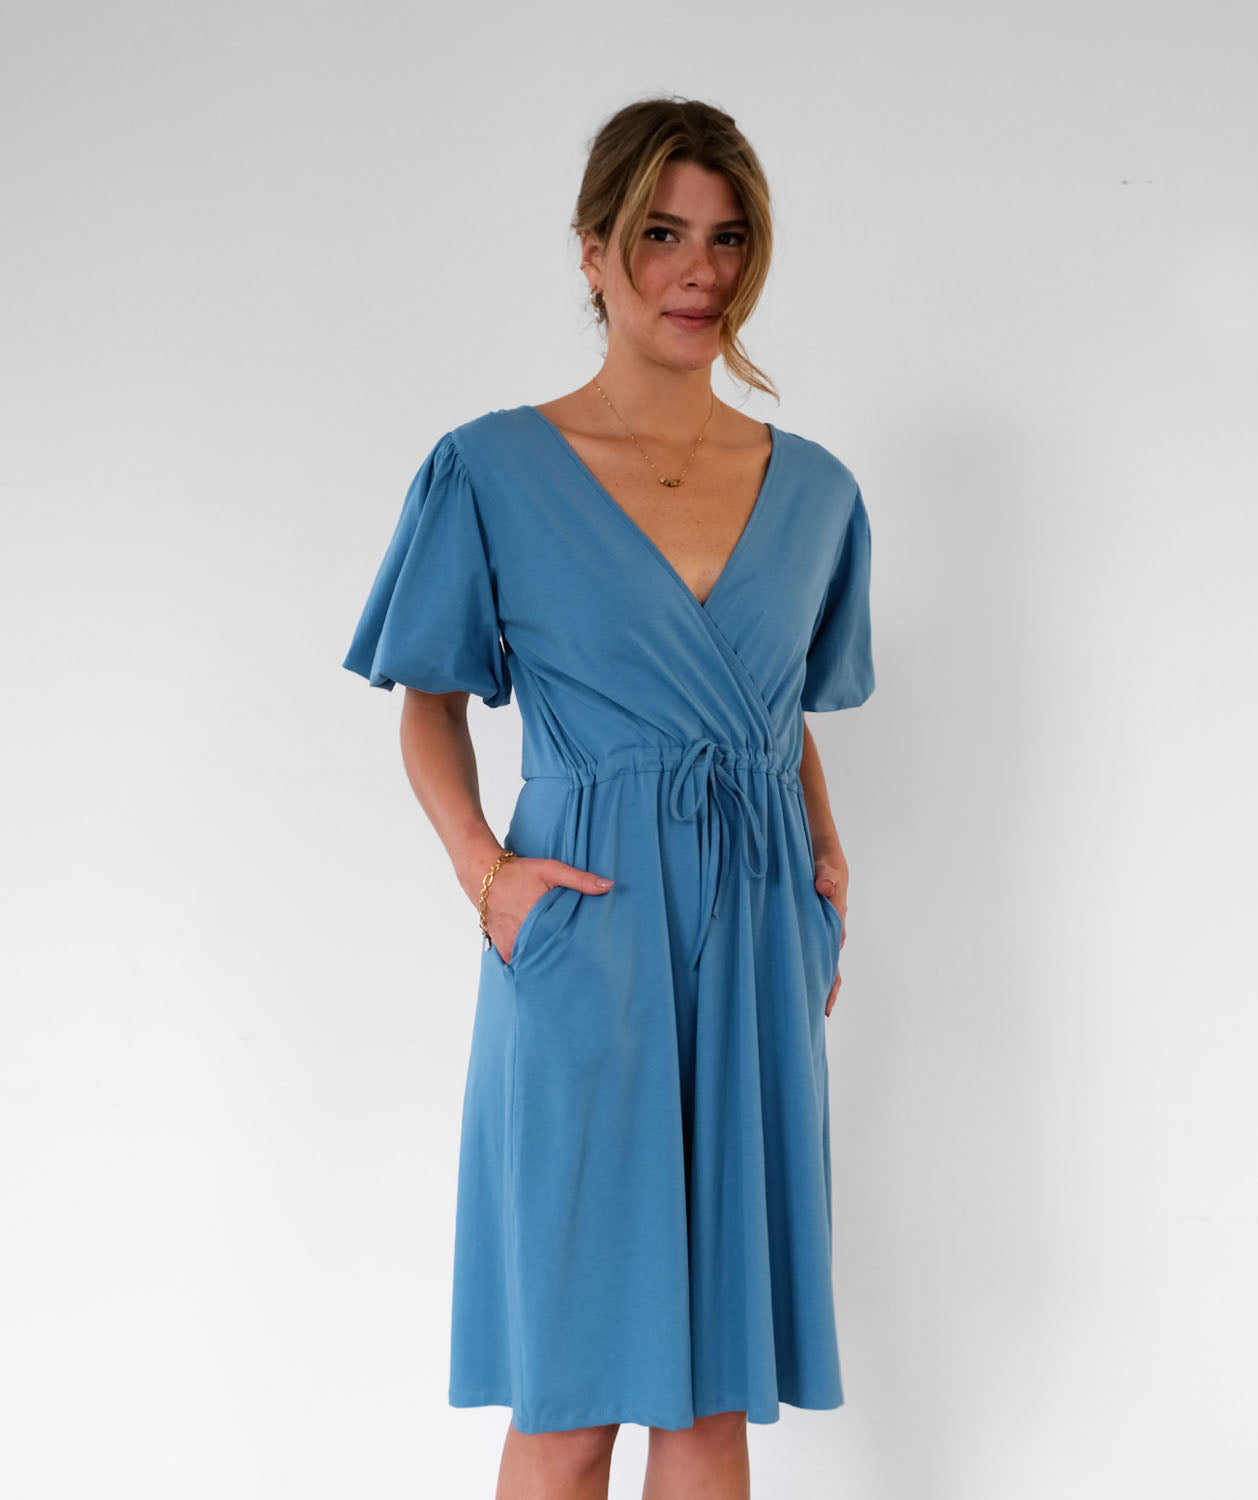 ADELE dress in Azure Blue